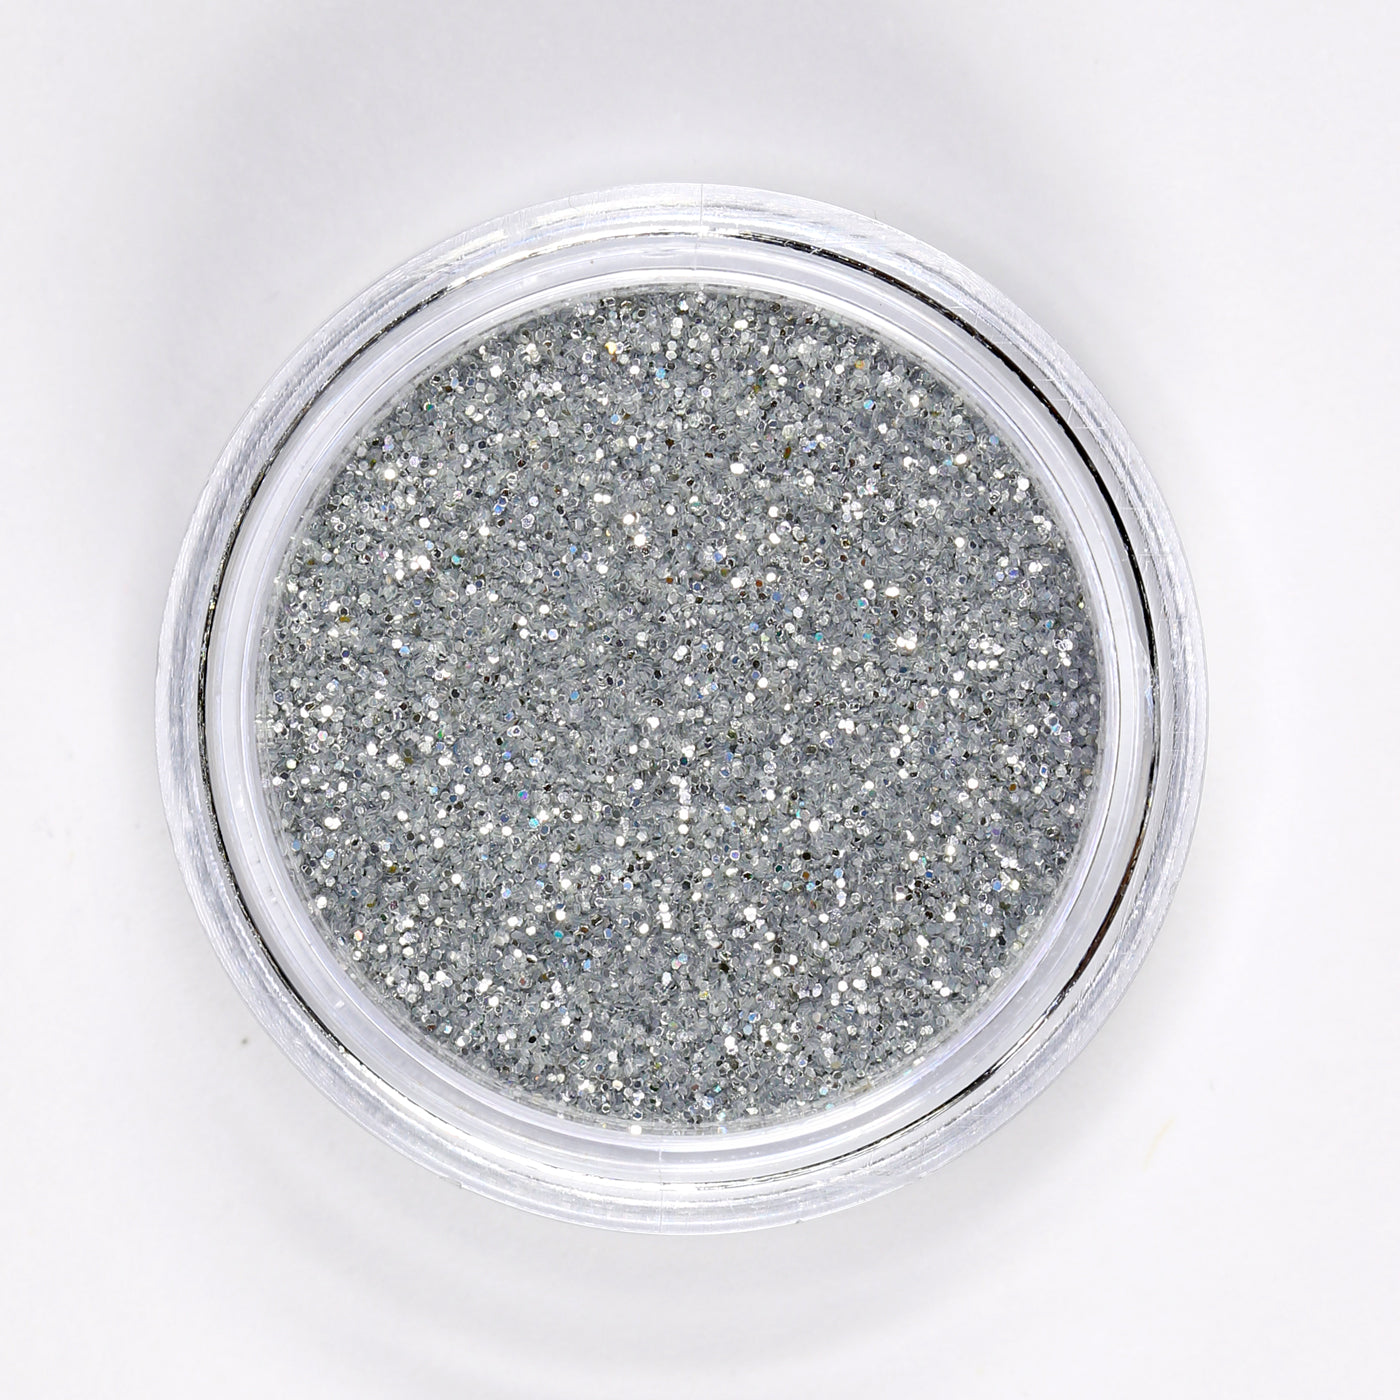 Glitter argento per decorazioni 40 g assortito H&S Collection - prezzi bassi